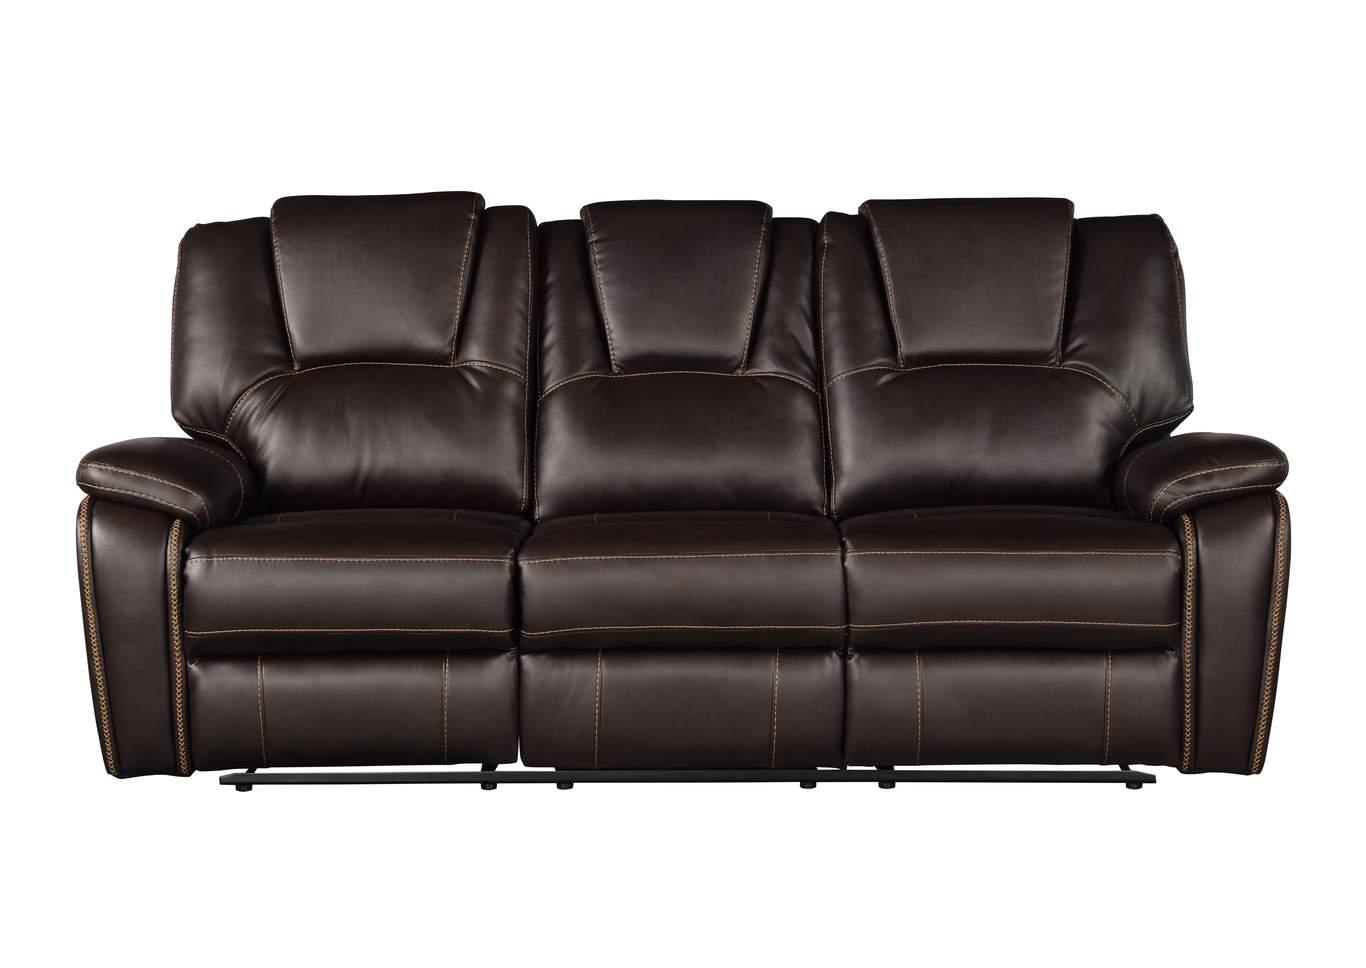 Galaxy Home Furniture Hongkong Recliner Sofa